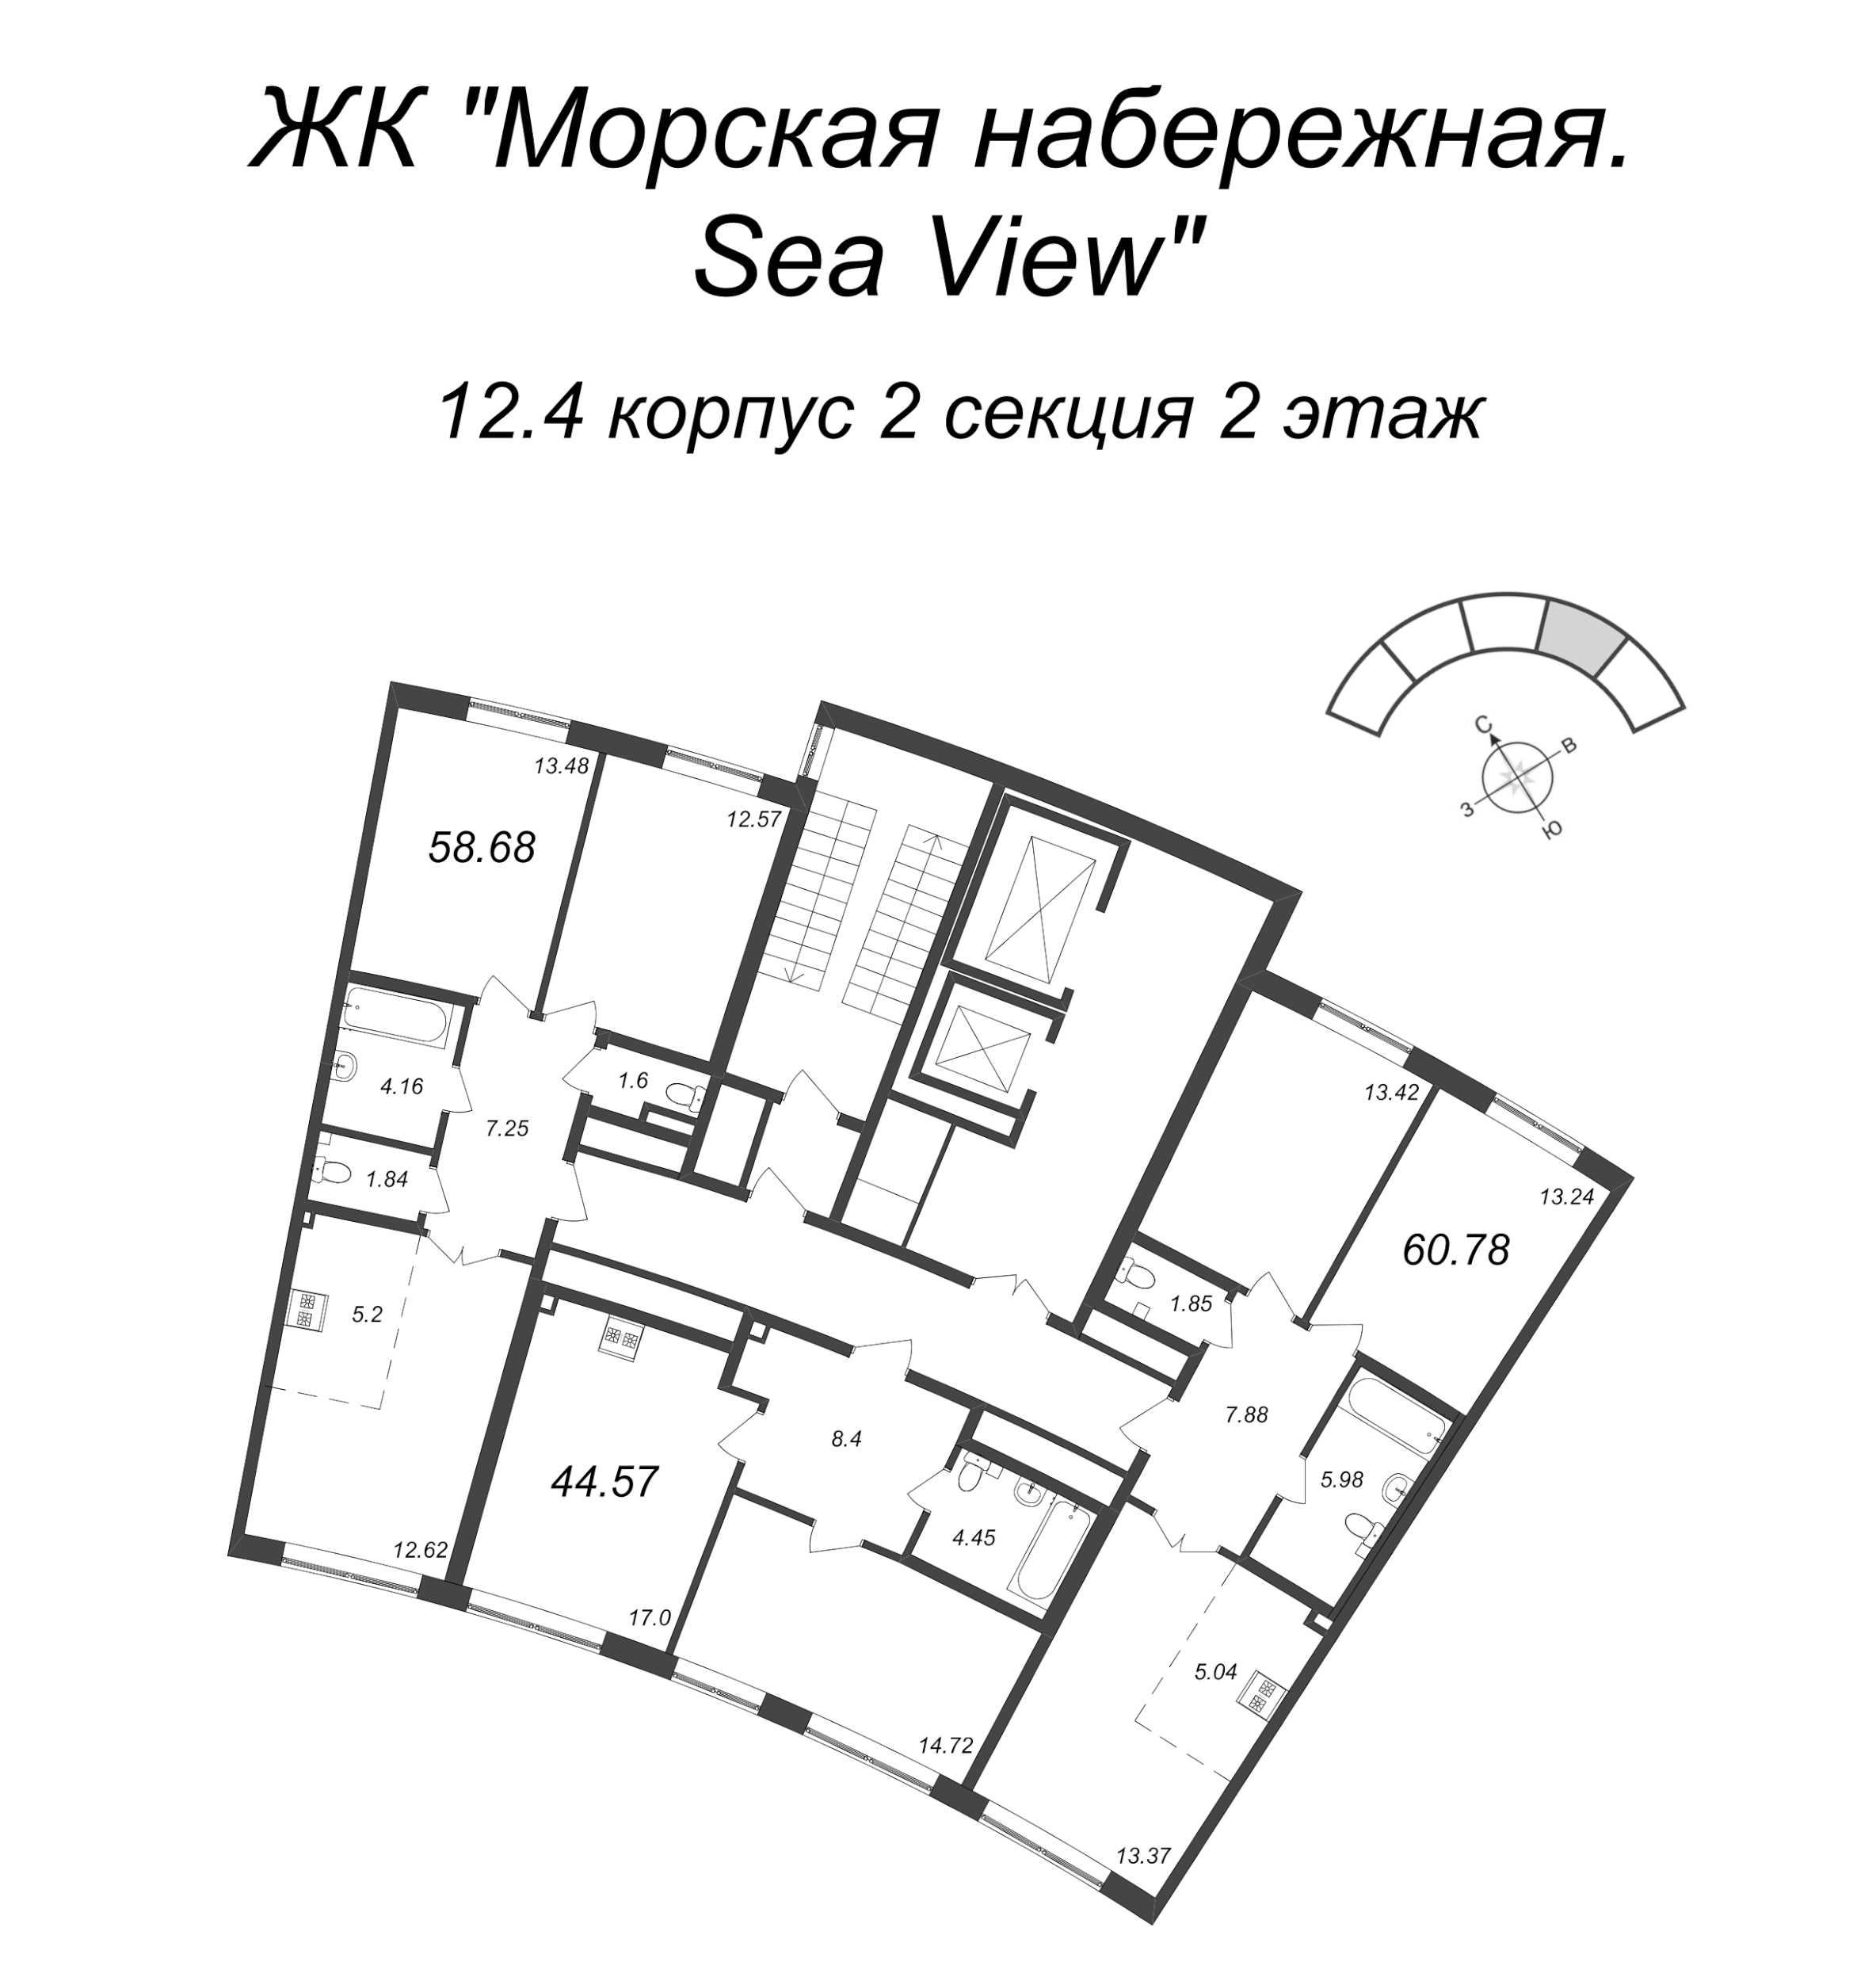 3-комнатная (Евро) квартира, 60.78 м² в ЖК "Морская набережная. SeaView" - планировка этажа